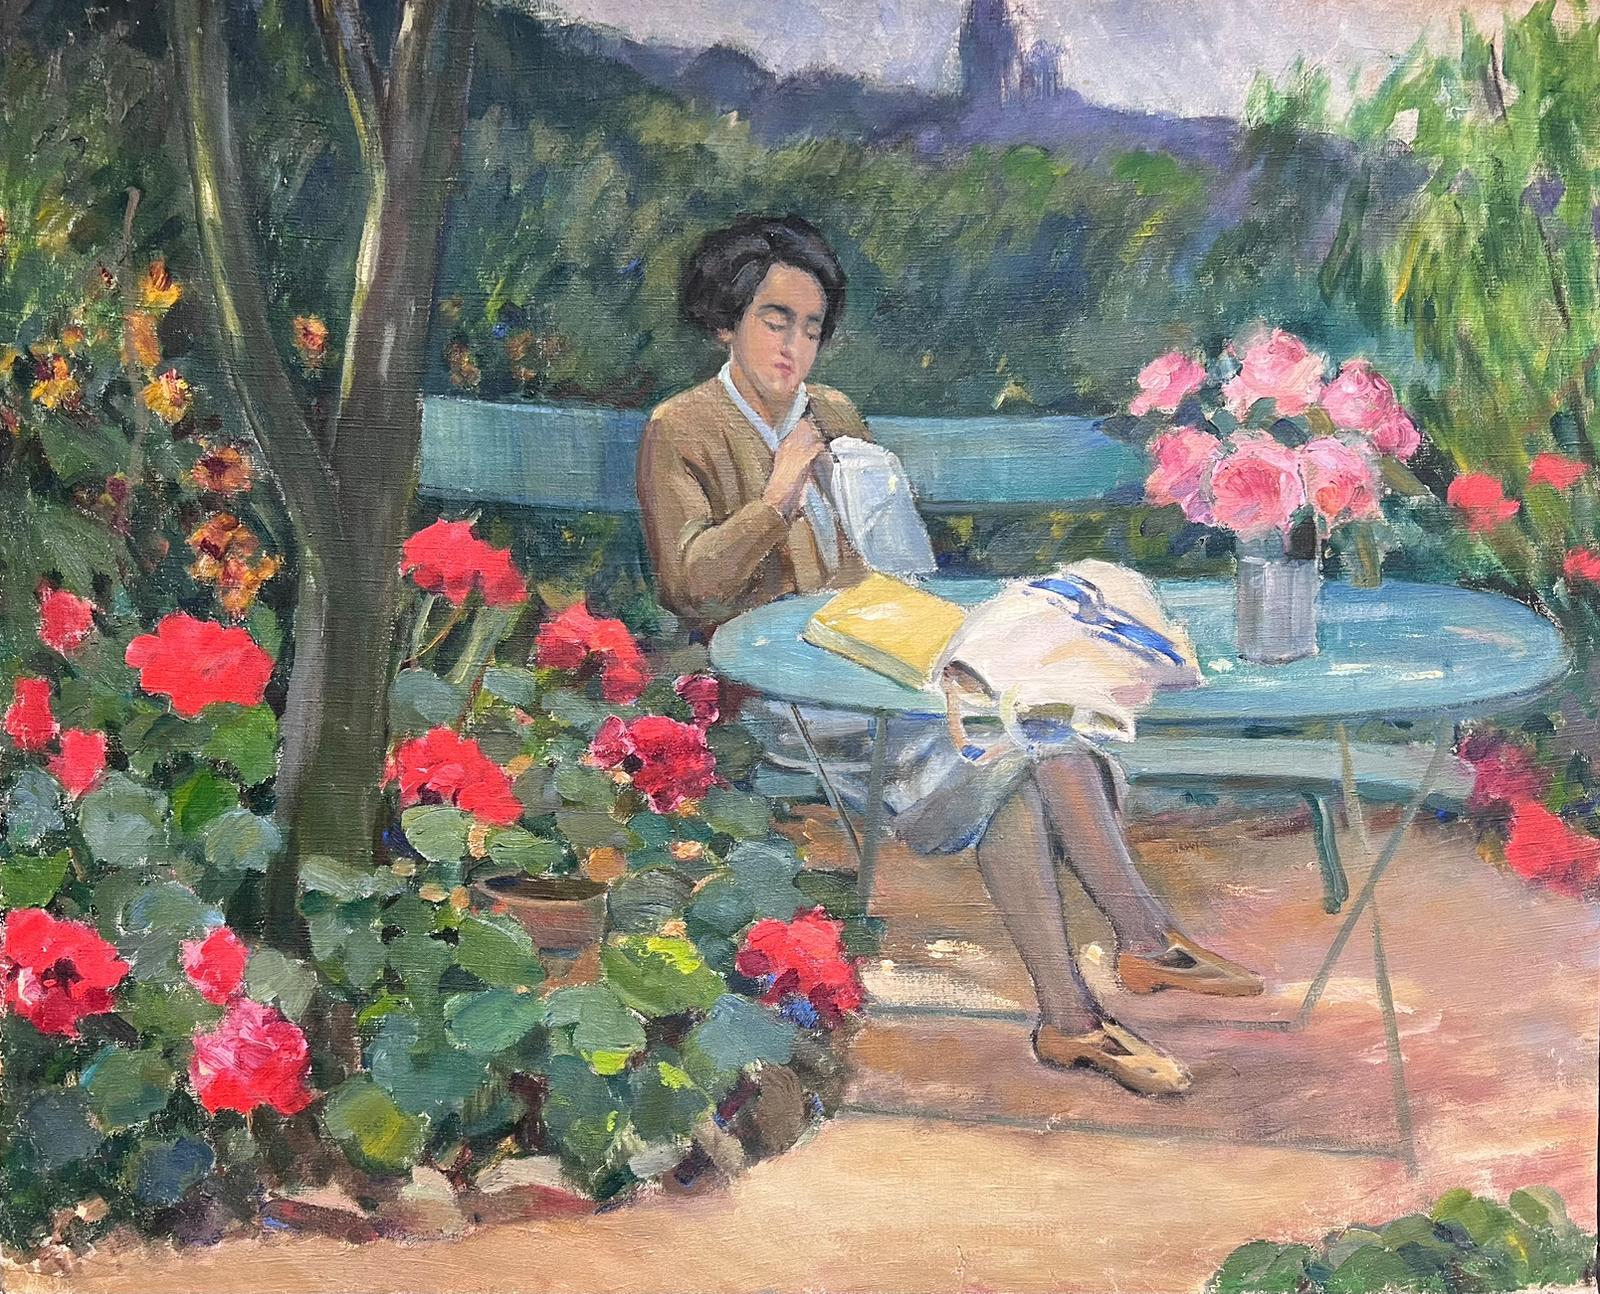 Huile impressionniste française du milieu du 20e siècle représentant une femme dans un joli jardin de fleurs sur banc